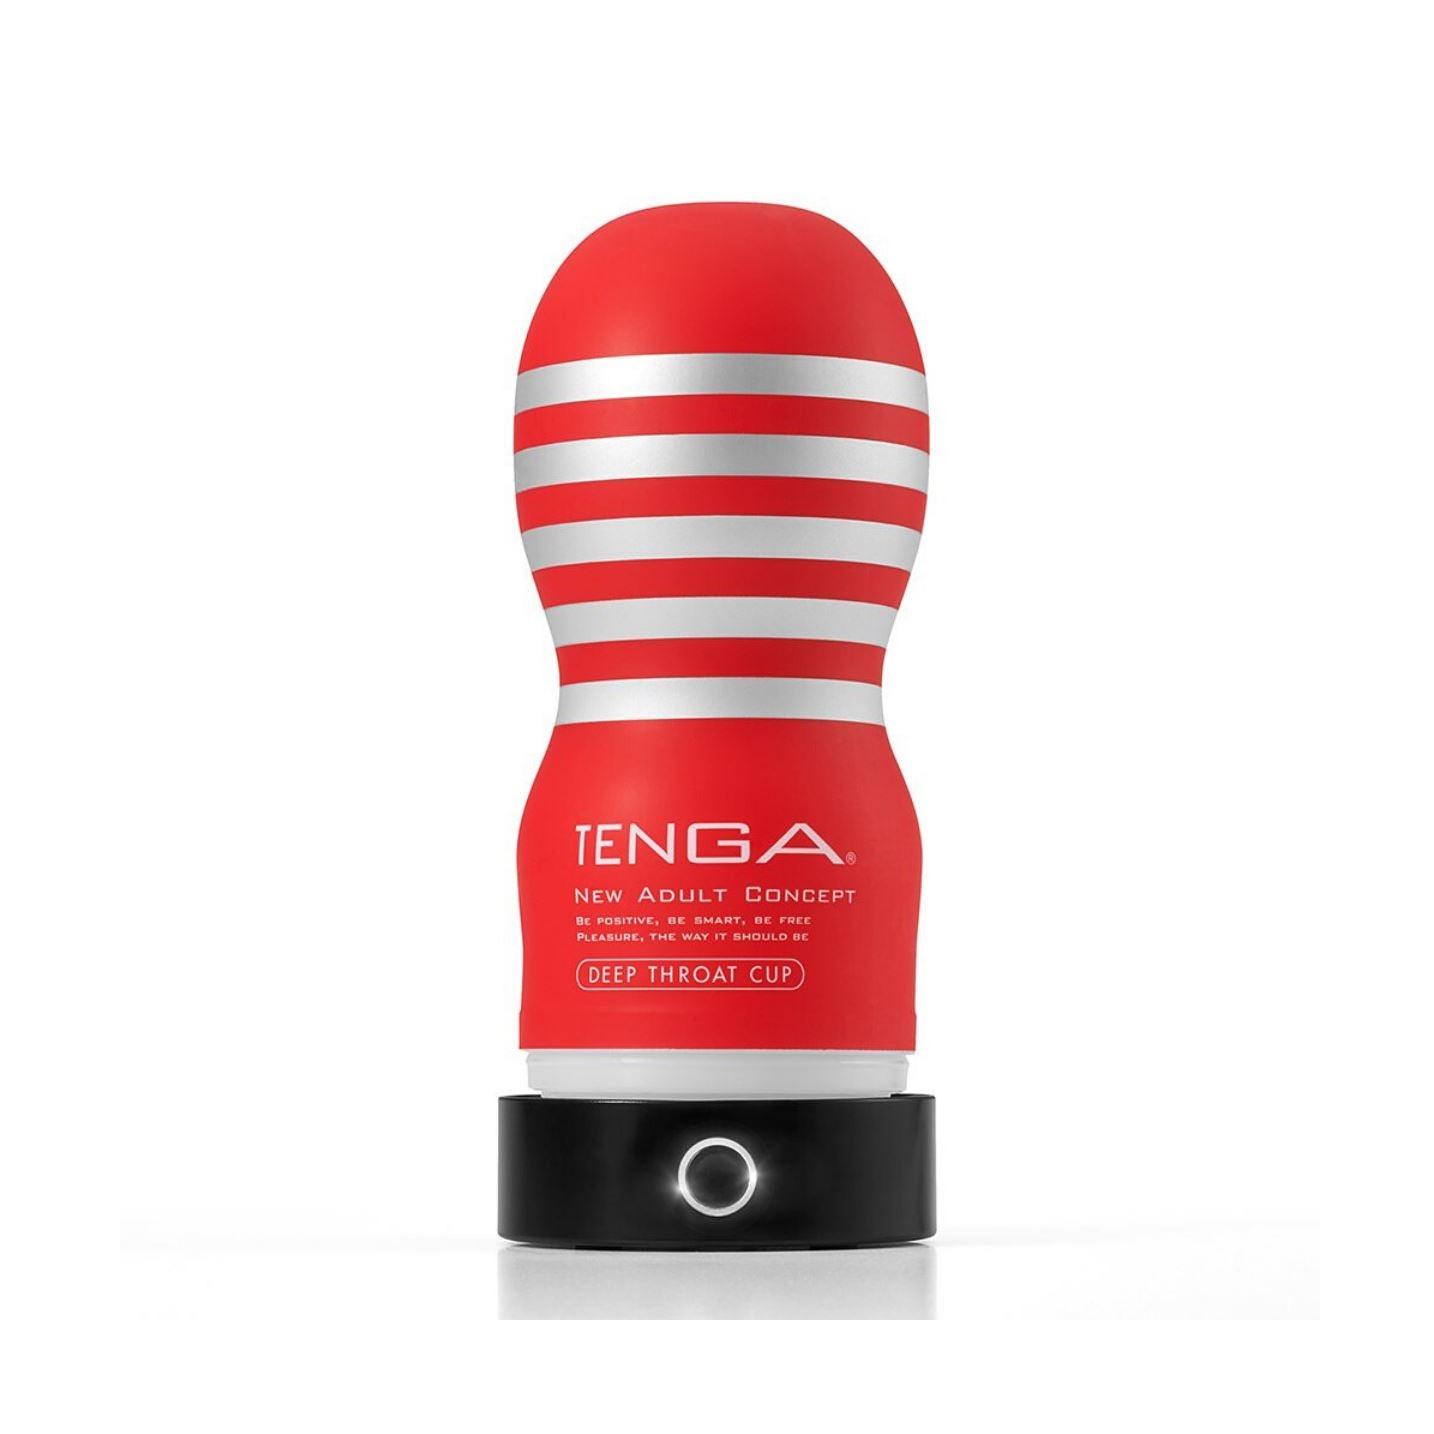 TENGA TENGA CUP WARMER 專屬飛機杯加熱器 情趣用品周邊配件 購買